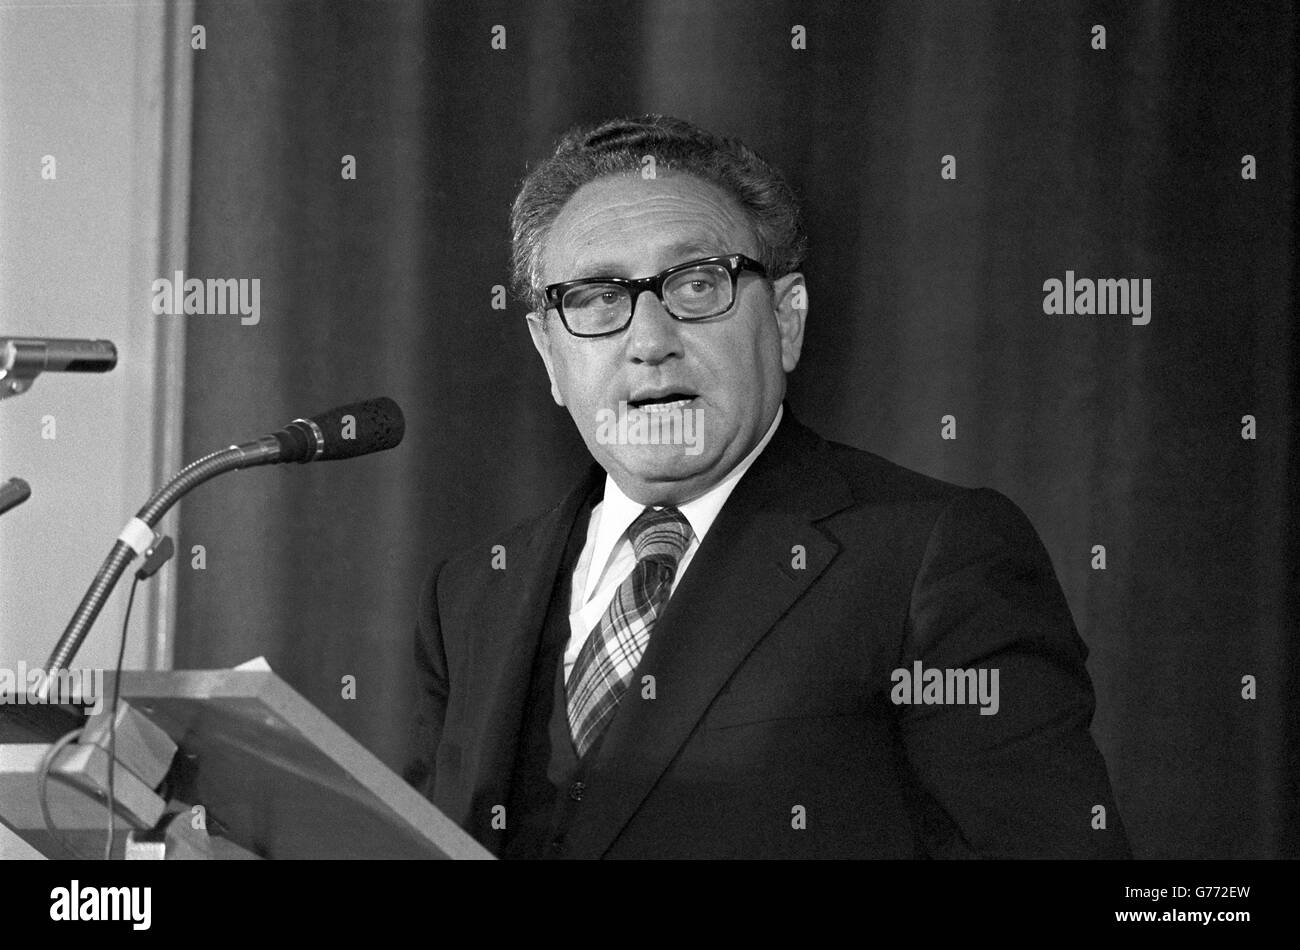 Politcs - Dr Henry Kissinger Speech - London. Dr Henry Kissinger delivers a speech. Stock Photo